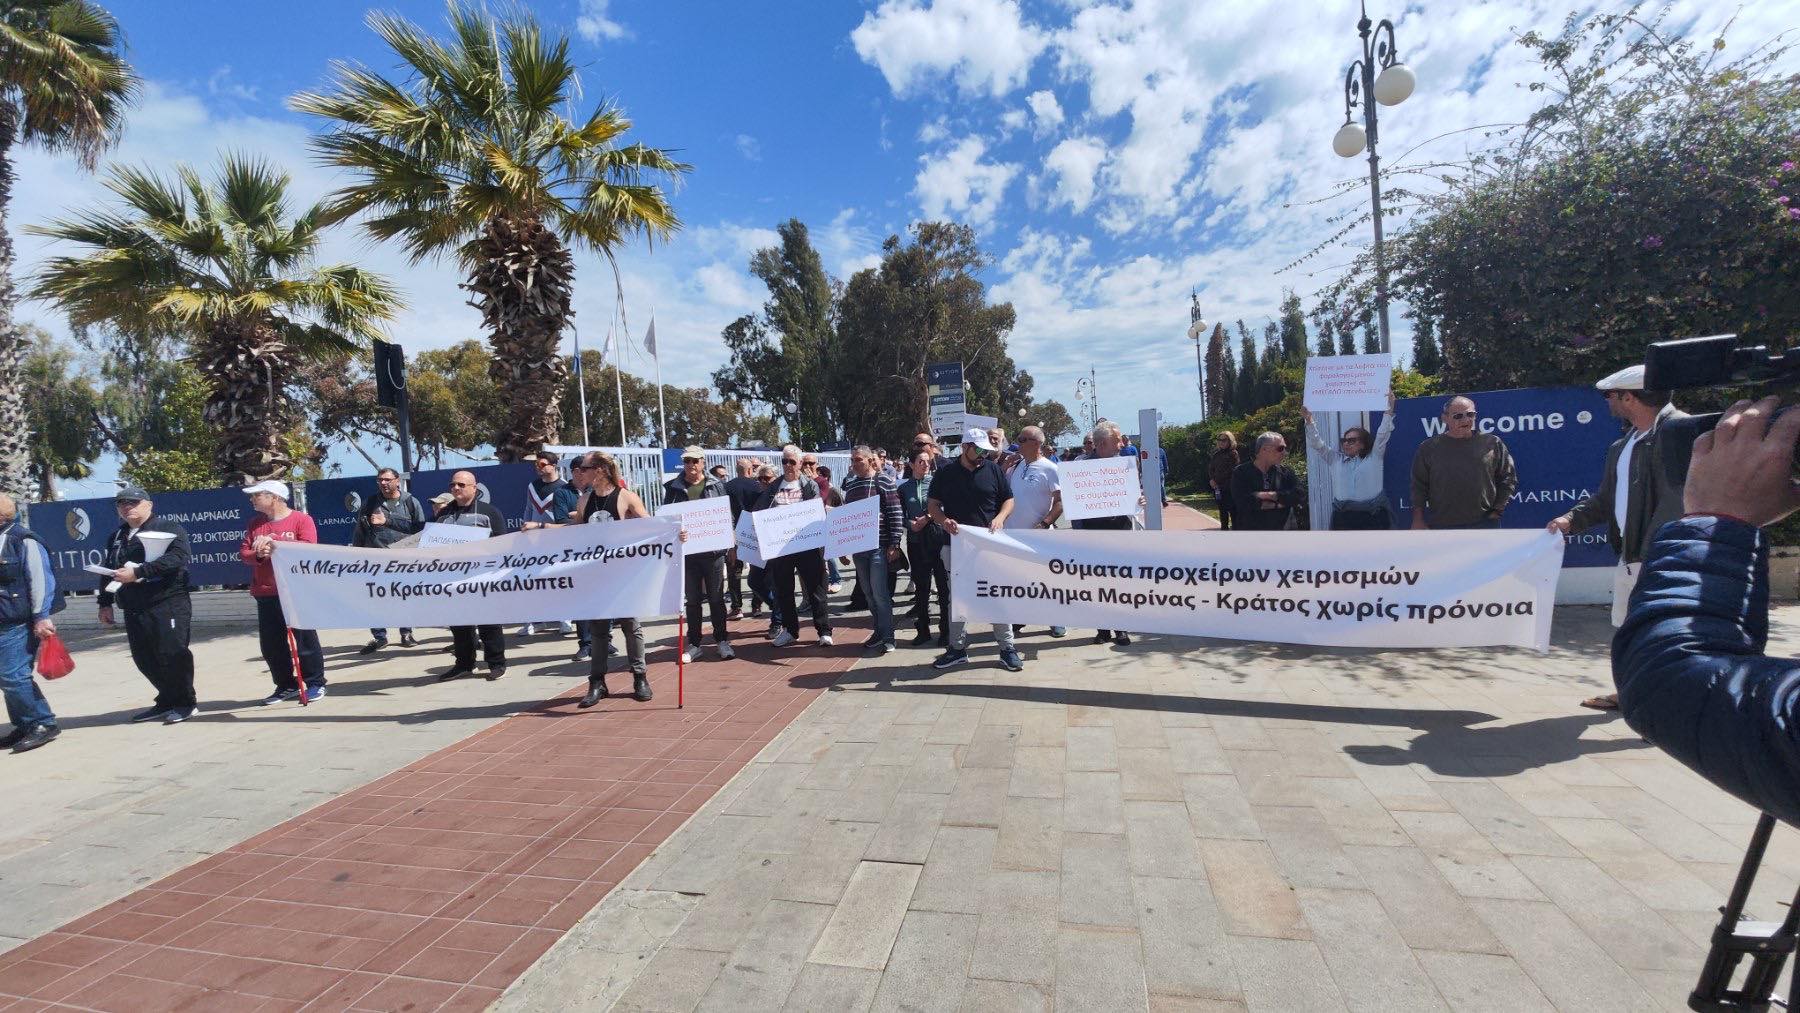 Δημόσια τοποθέτηση της Kition Ocean Μarina, σχετικά με τη διαμαρτυρία των Ιδιοκτητών Ελλιμενισμένων Σκαφών στη Μαρίνα Λάρνακας